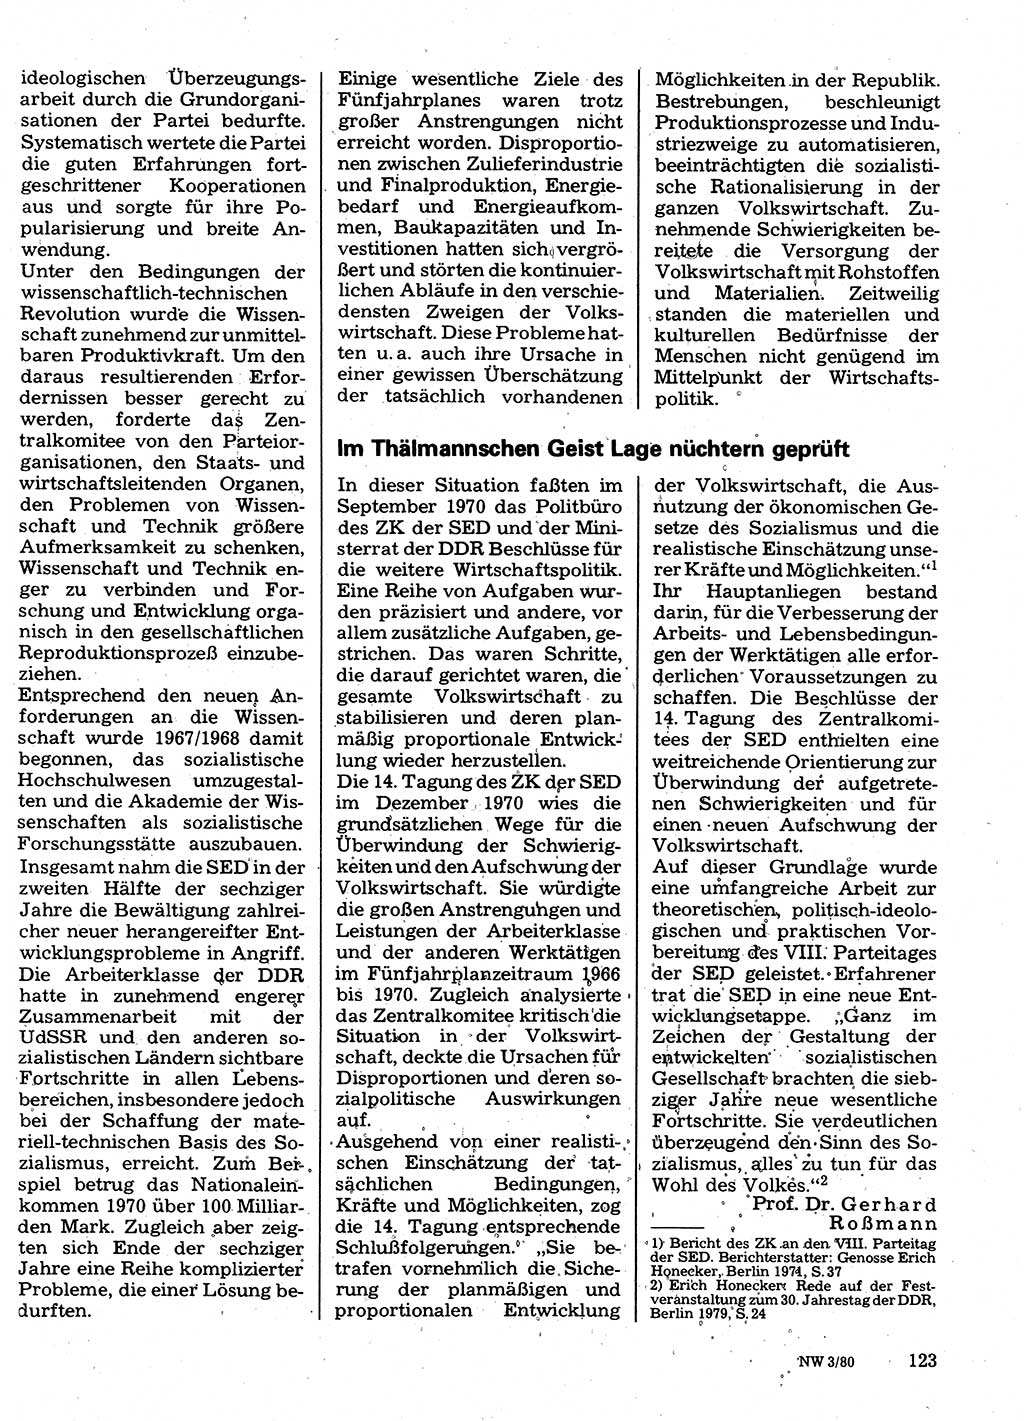 Neuer Weg (NW), Organ des Zentralkomitees (ZK) der SED (Sozialistische Einheitspartei Deutschlands) für Fragen des Parteilebens, 35. Jahrgang [Deutsche Demokratische Republik (DDR)] 1980, Seite 123 (NW ZK SED DDR 1980, S. 123)